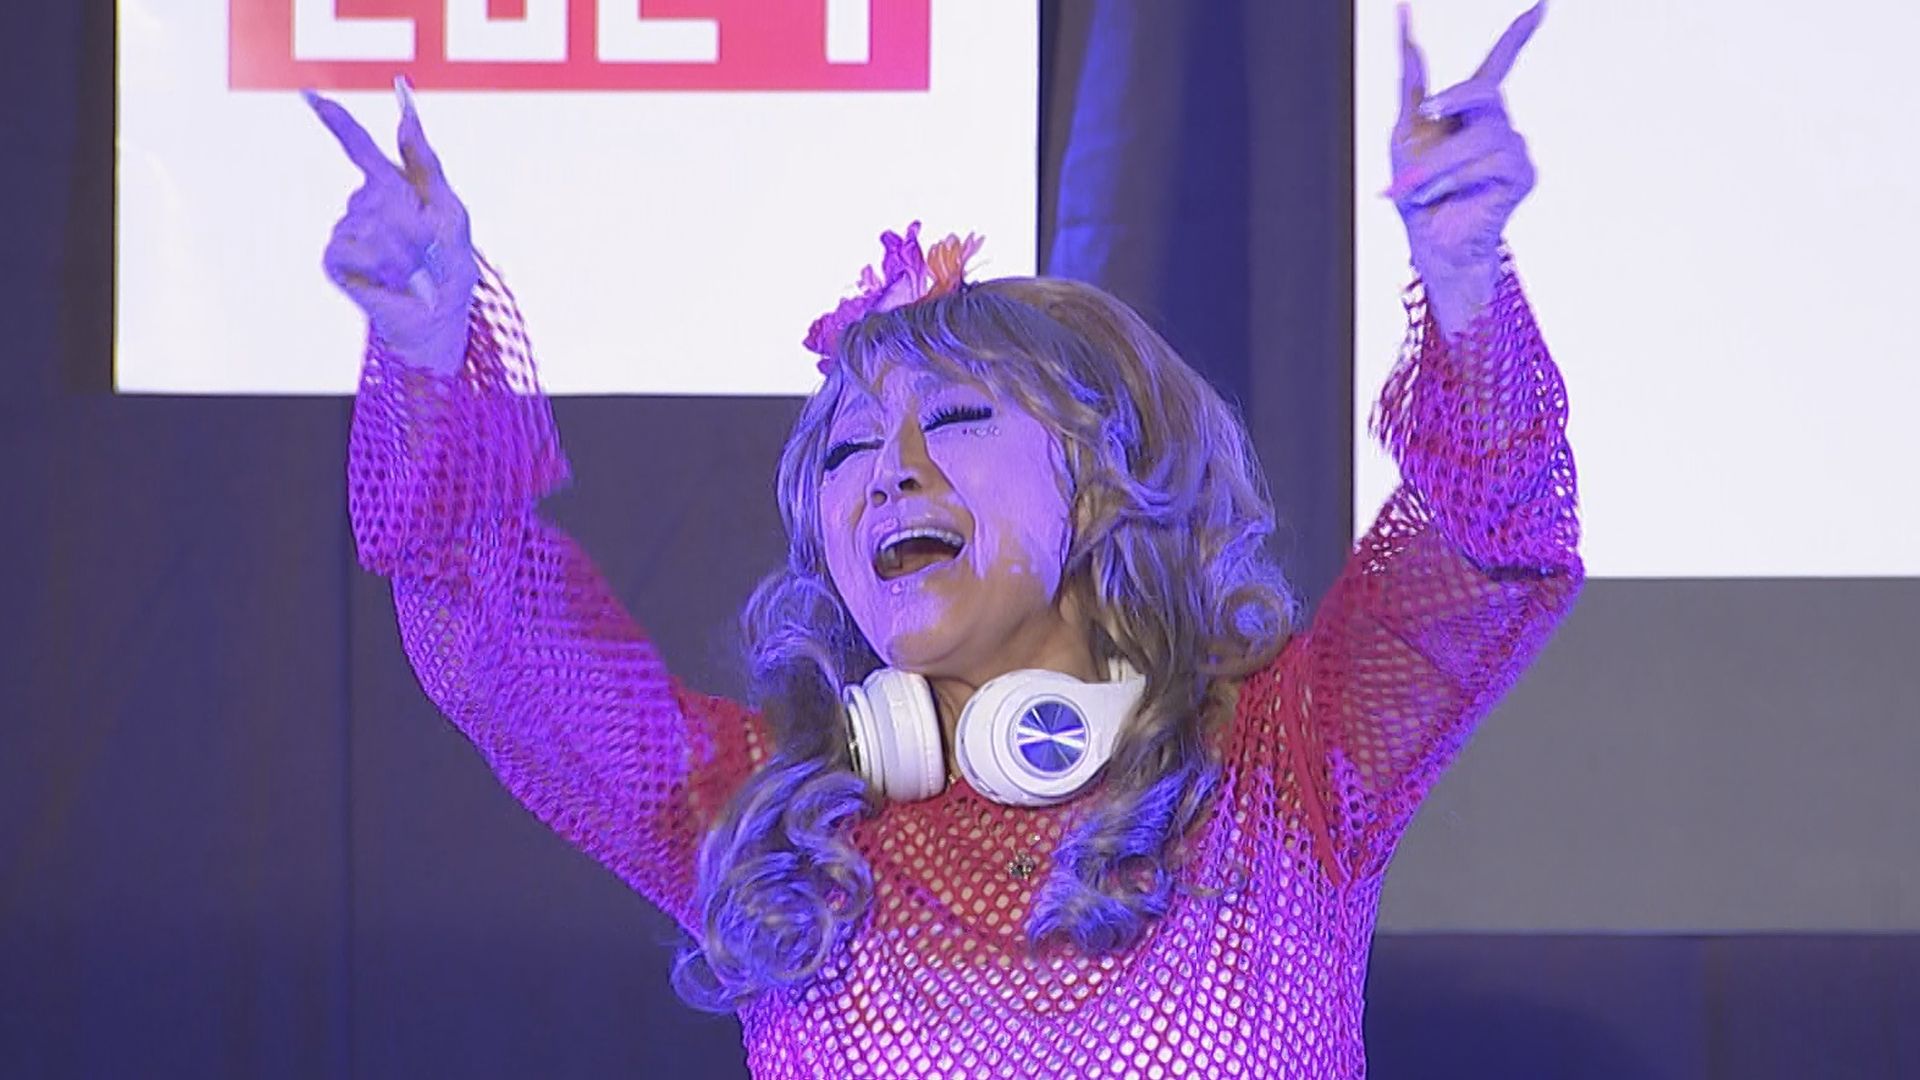 【小林幸子】ギャル界のラスボス・さちぴ☆降臨 DJプレイでノリノリブチアゲ